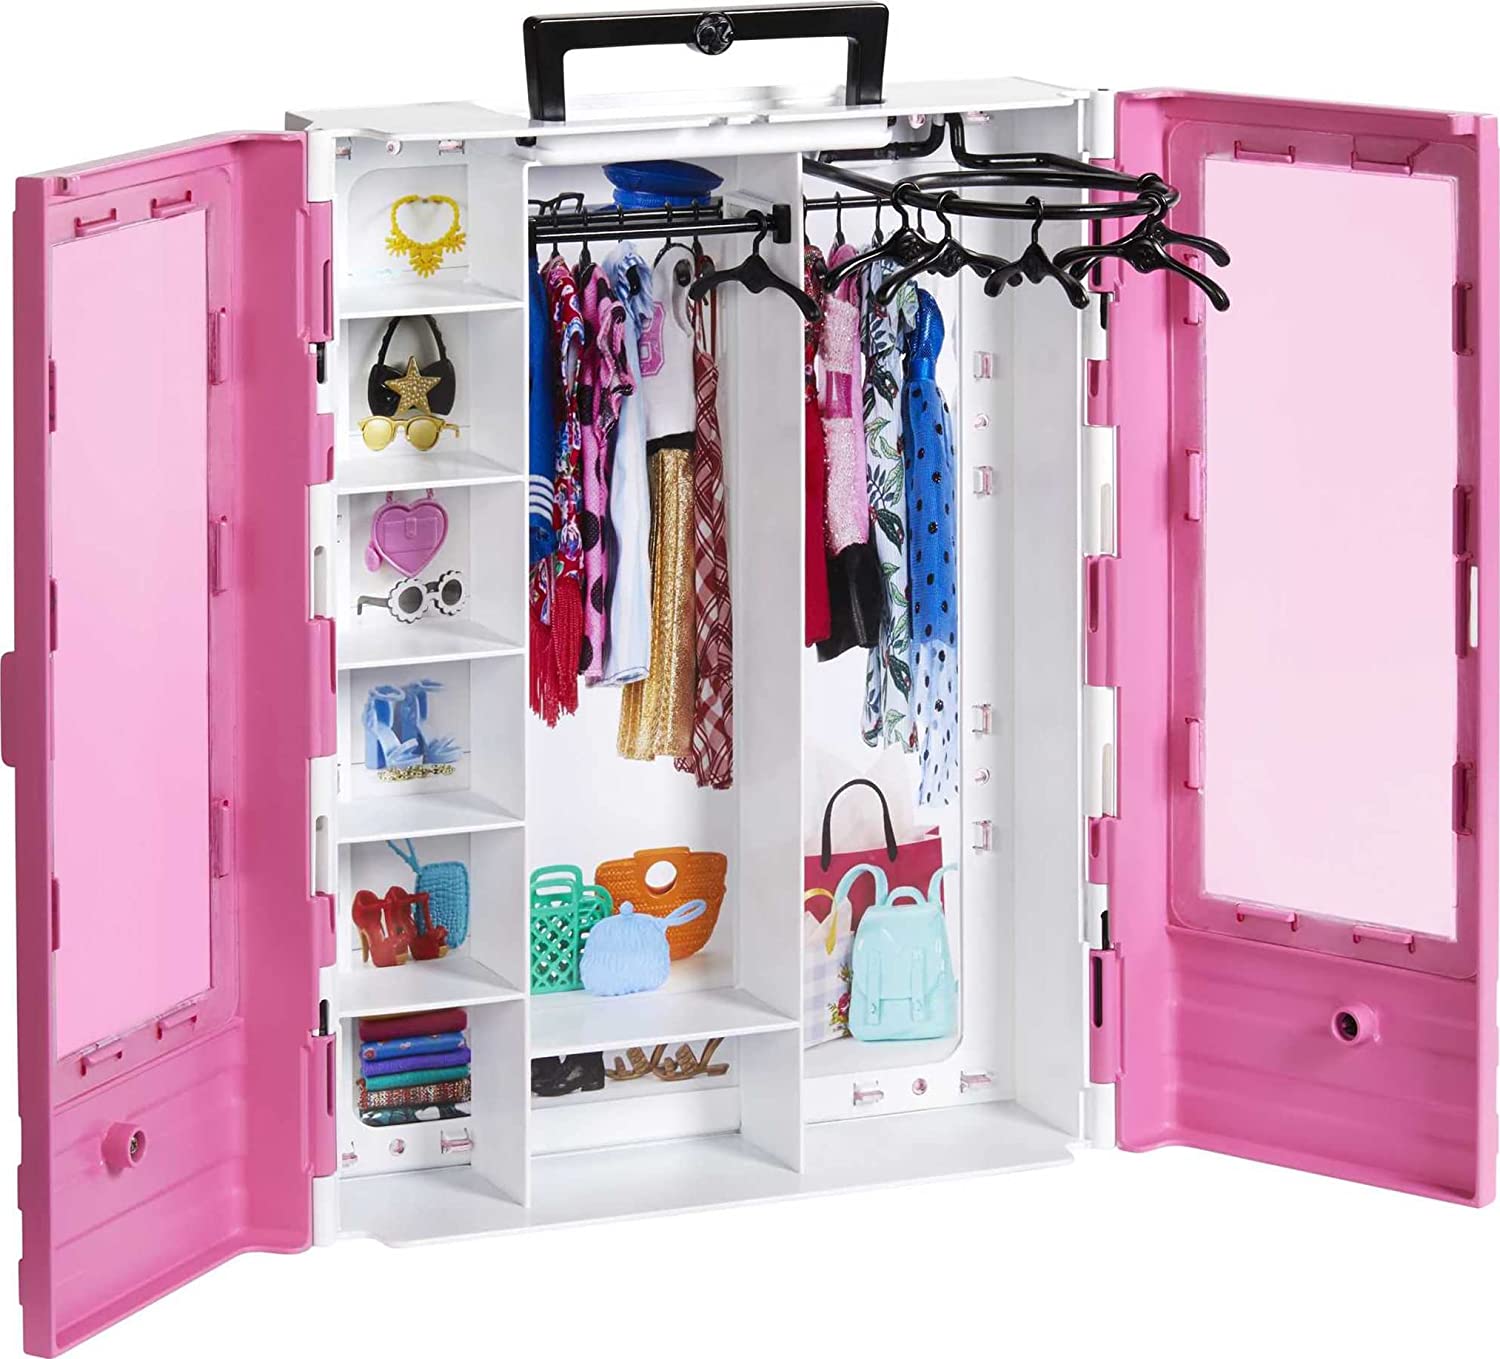 Jouet Mattel - GBK11 - Barbie Fashionistas Le Dressing de Rêve transportable 2